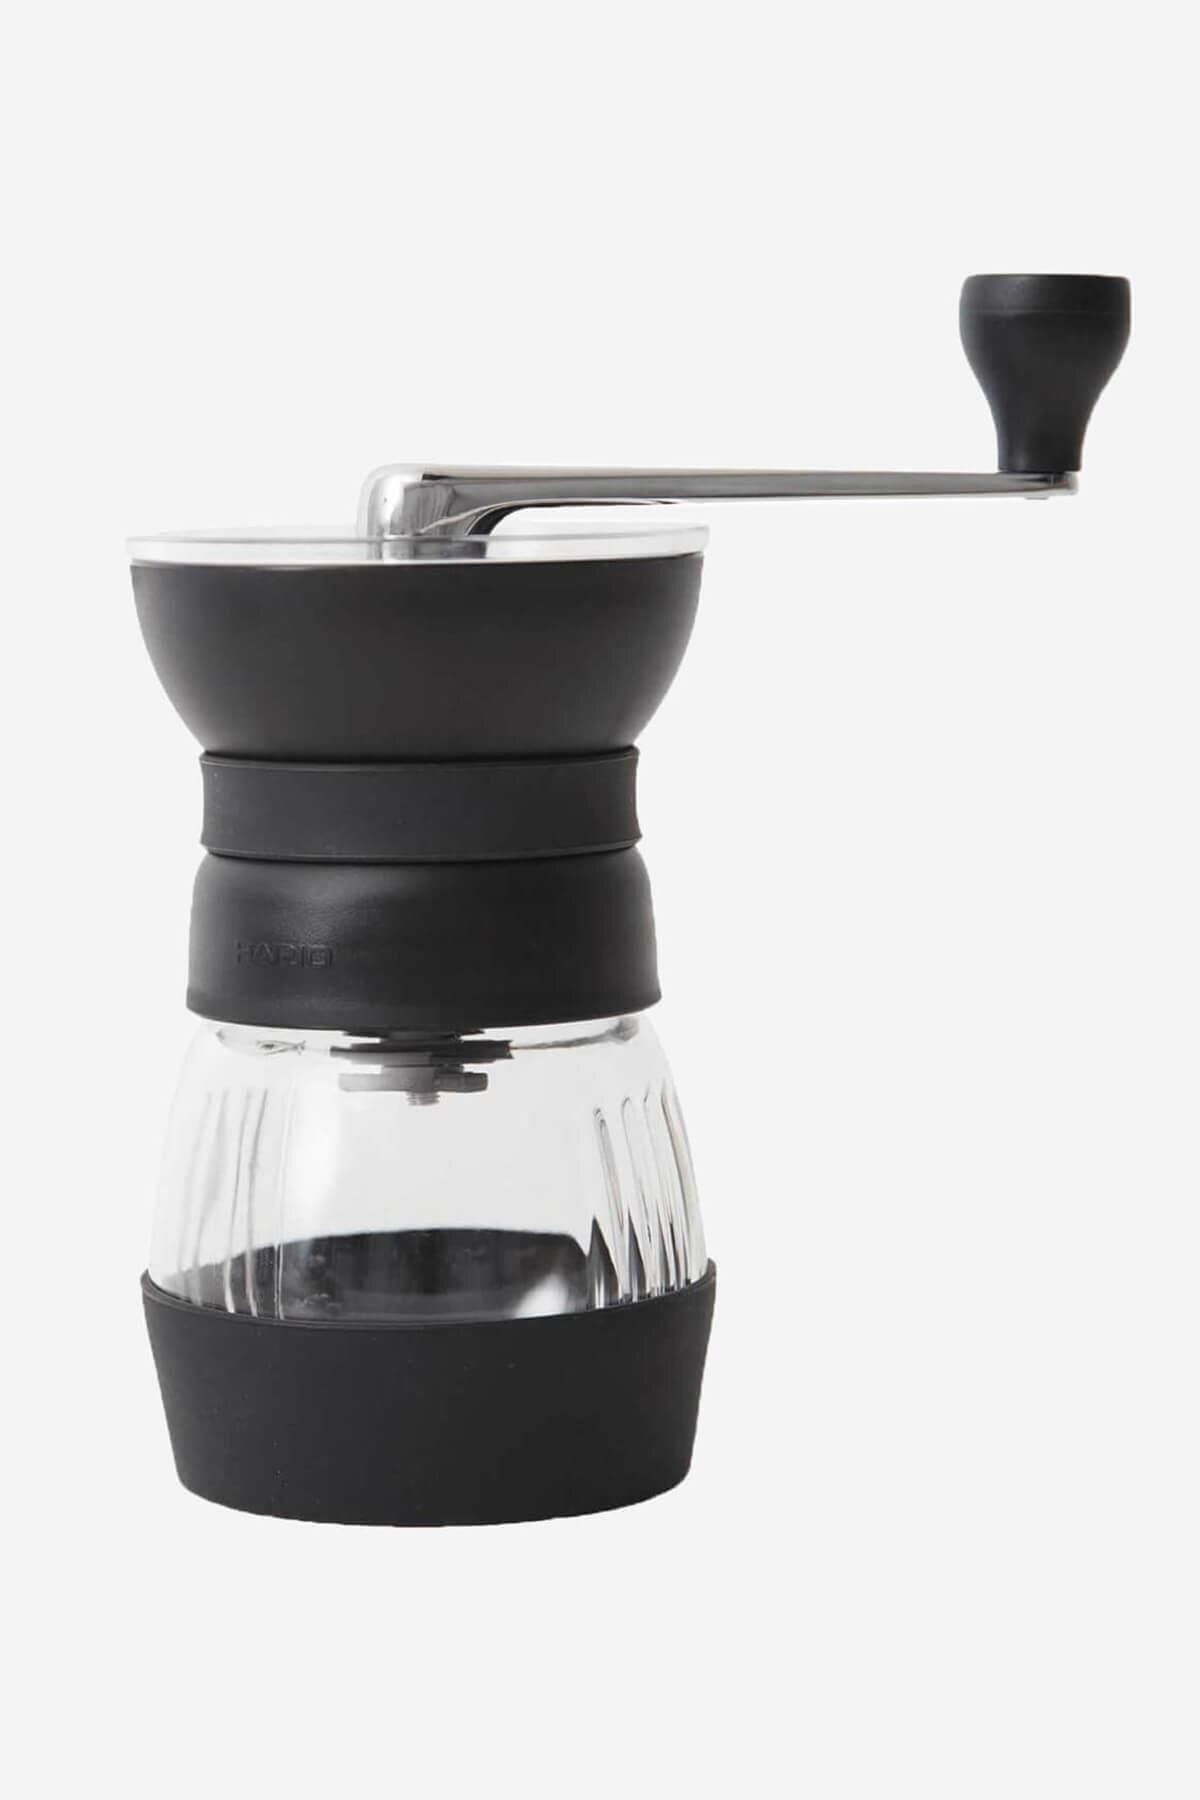 Hario - Skerton Pro Seramik Kahve Değirmeni | Öğütücü